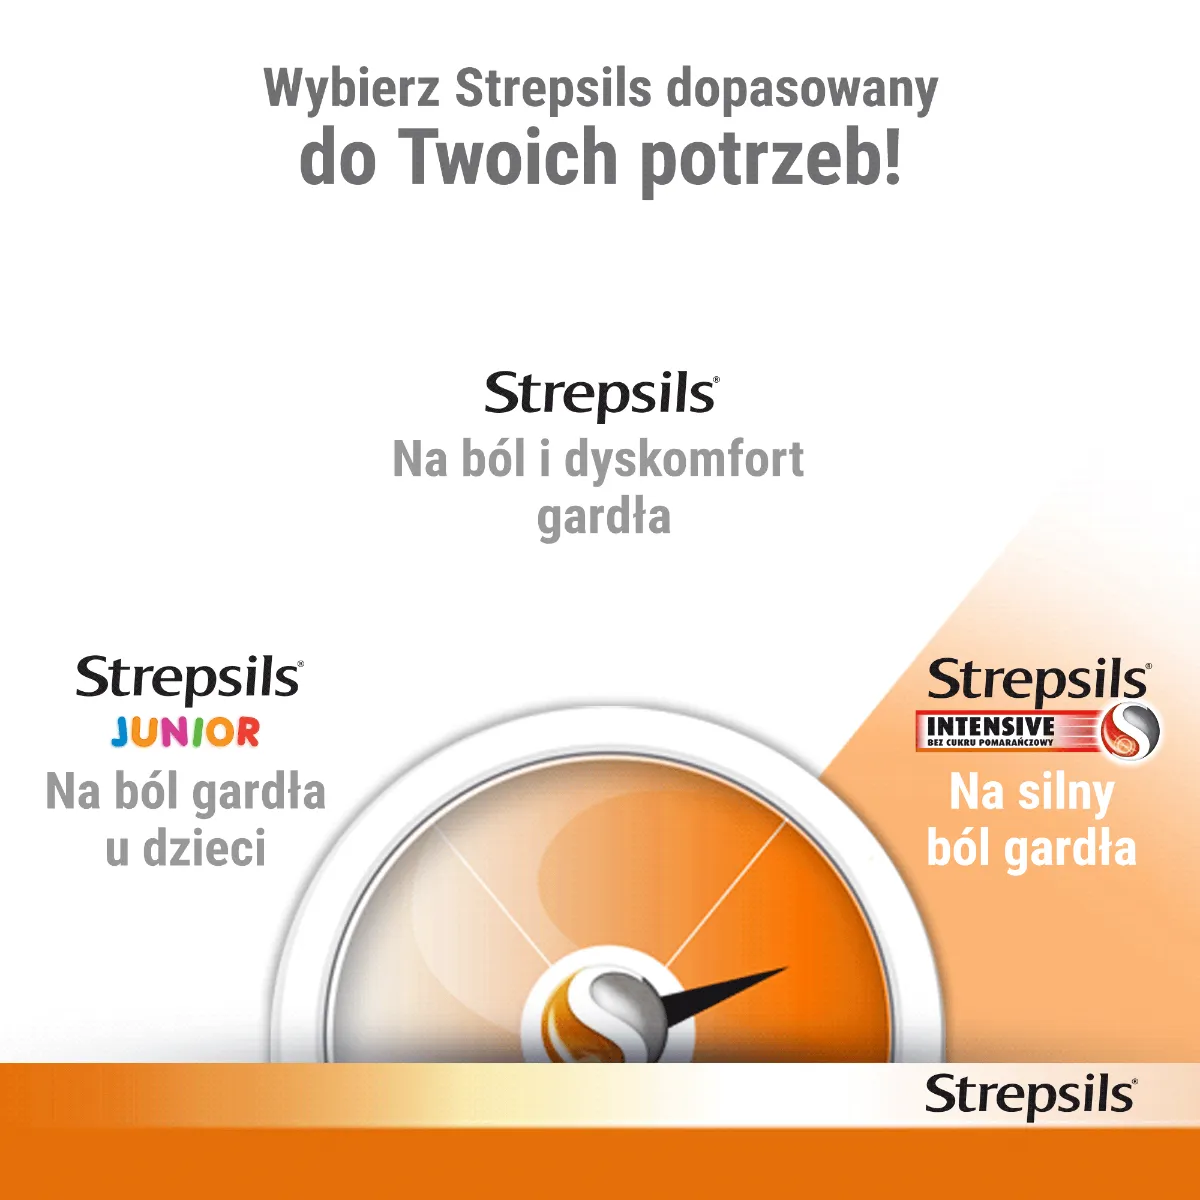 Strepsils Intensive, 8,75 mg, bez cukru, smak pomarańczowy, 16 pastylek 